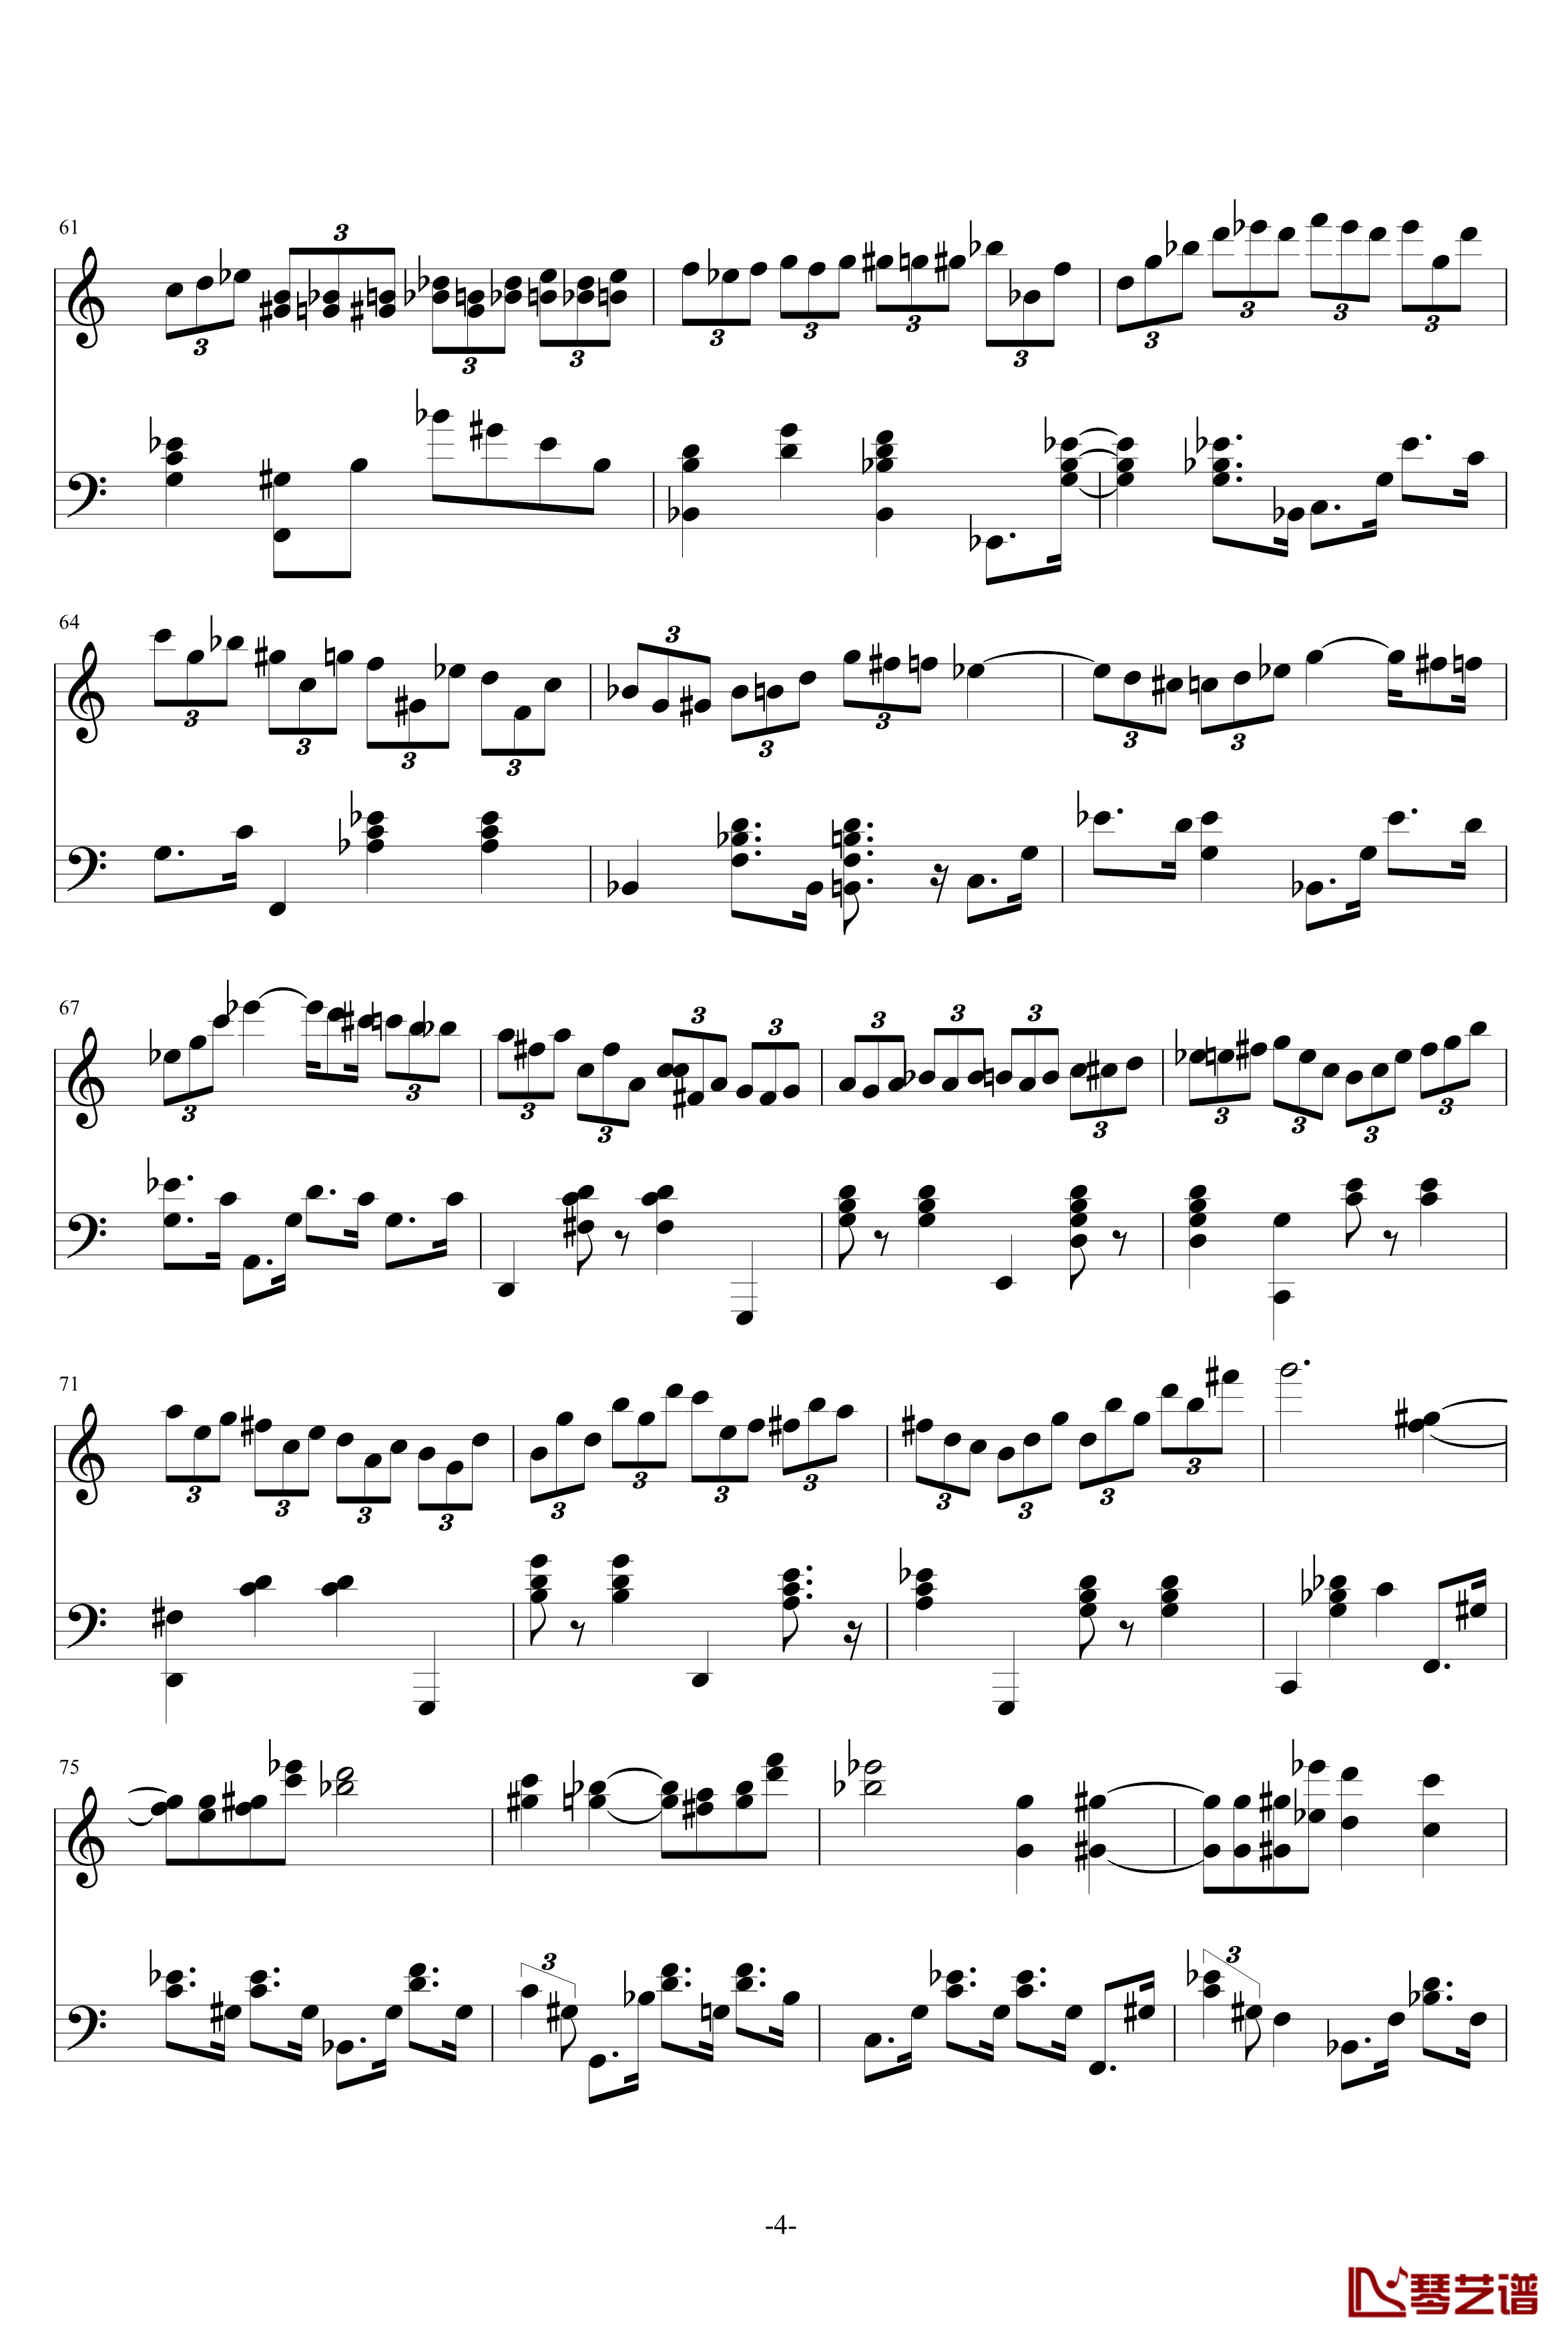 Magic Waltz钢琴谱-基本接近原版-海上钢琴师4